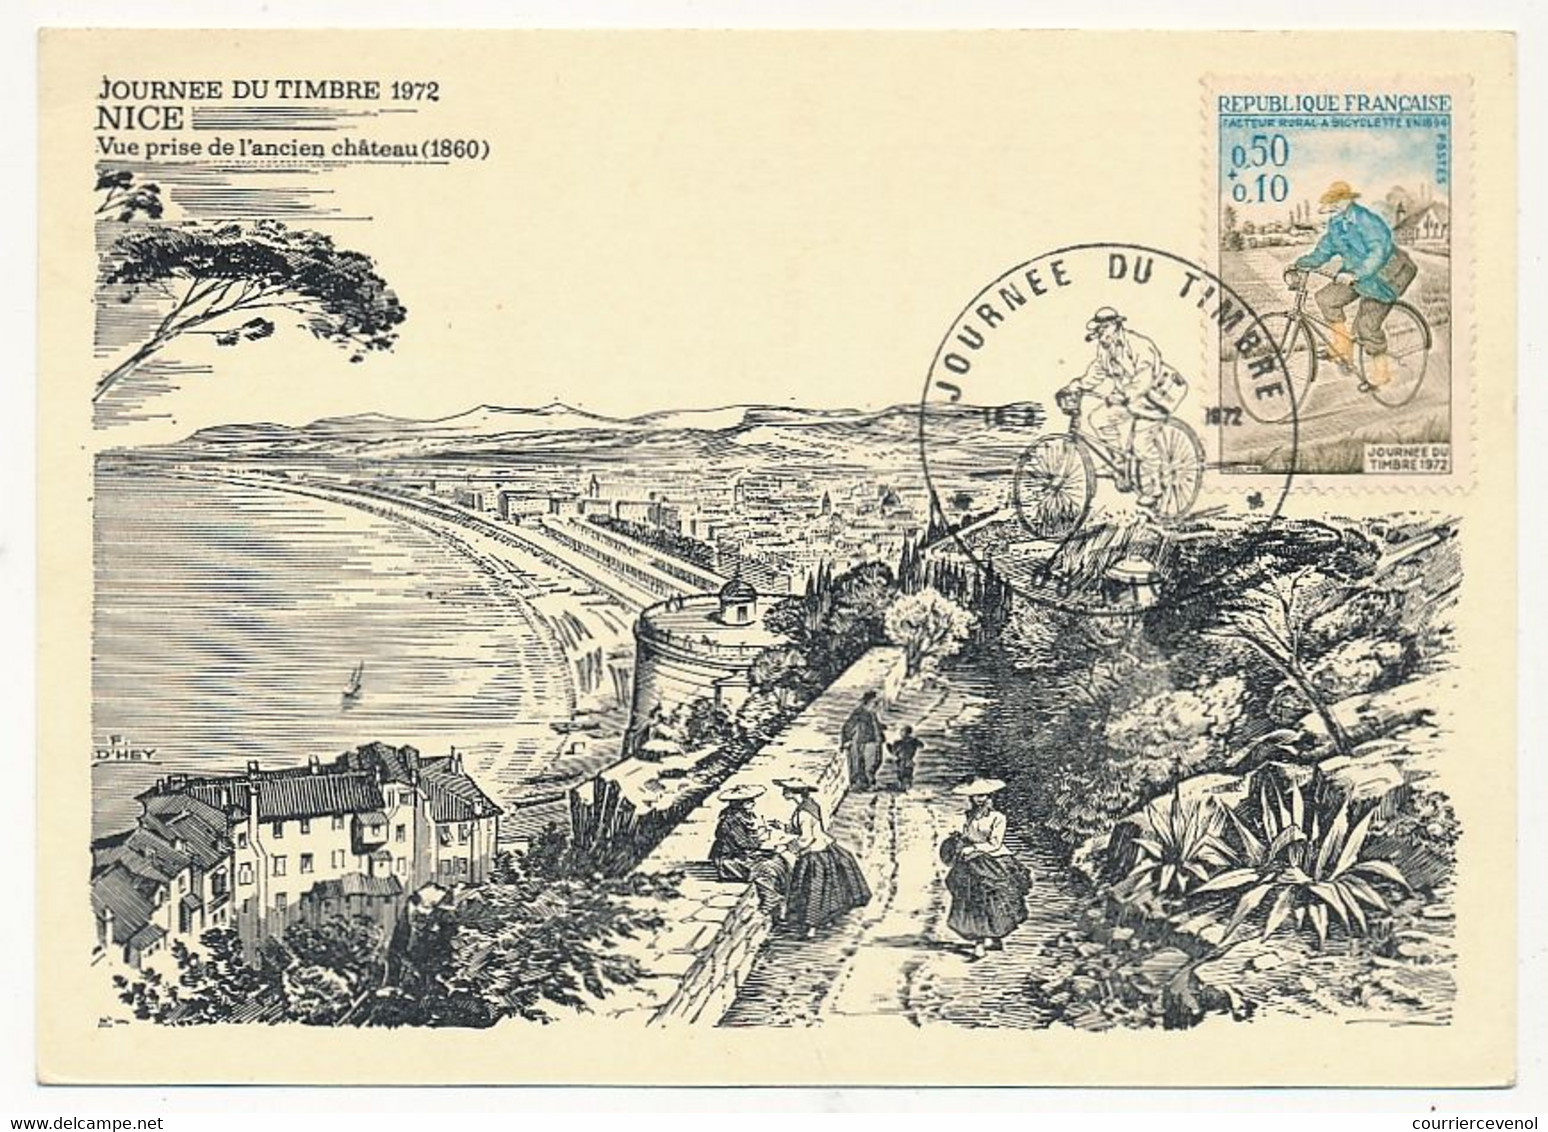 FRANCE - Carte Locale - Journée Du Timbre 1972 - Facteur Rural à Bicyclette - 06 NICE - 18 Mars 1972 - Día Del Sello